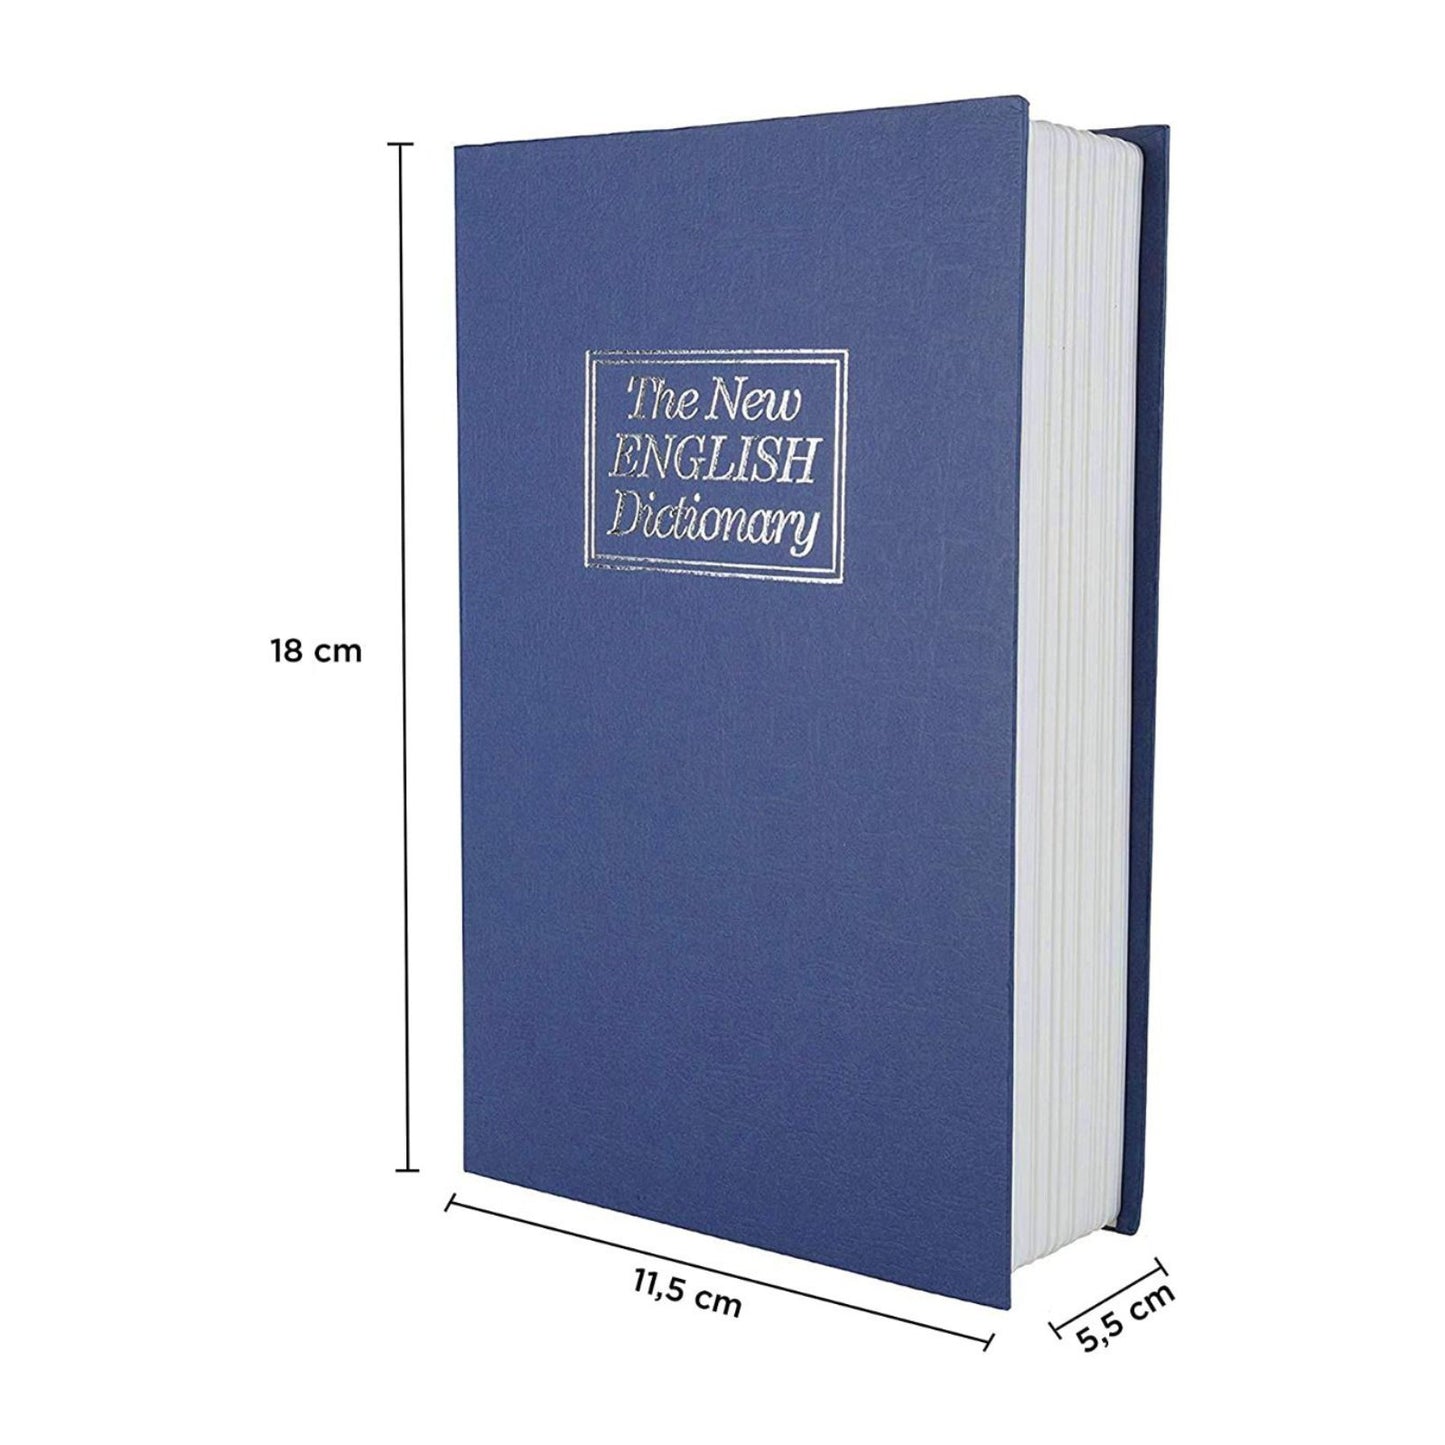 Buchtresor in Blau mit Zahlenschloss, englisches Wörterbuch, 180 mm x 115 mm x 55 mm